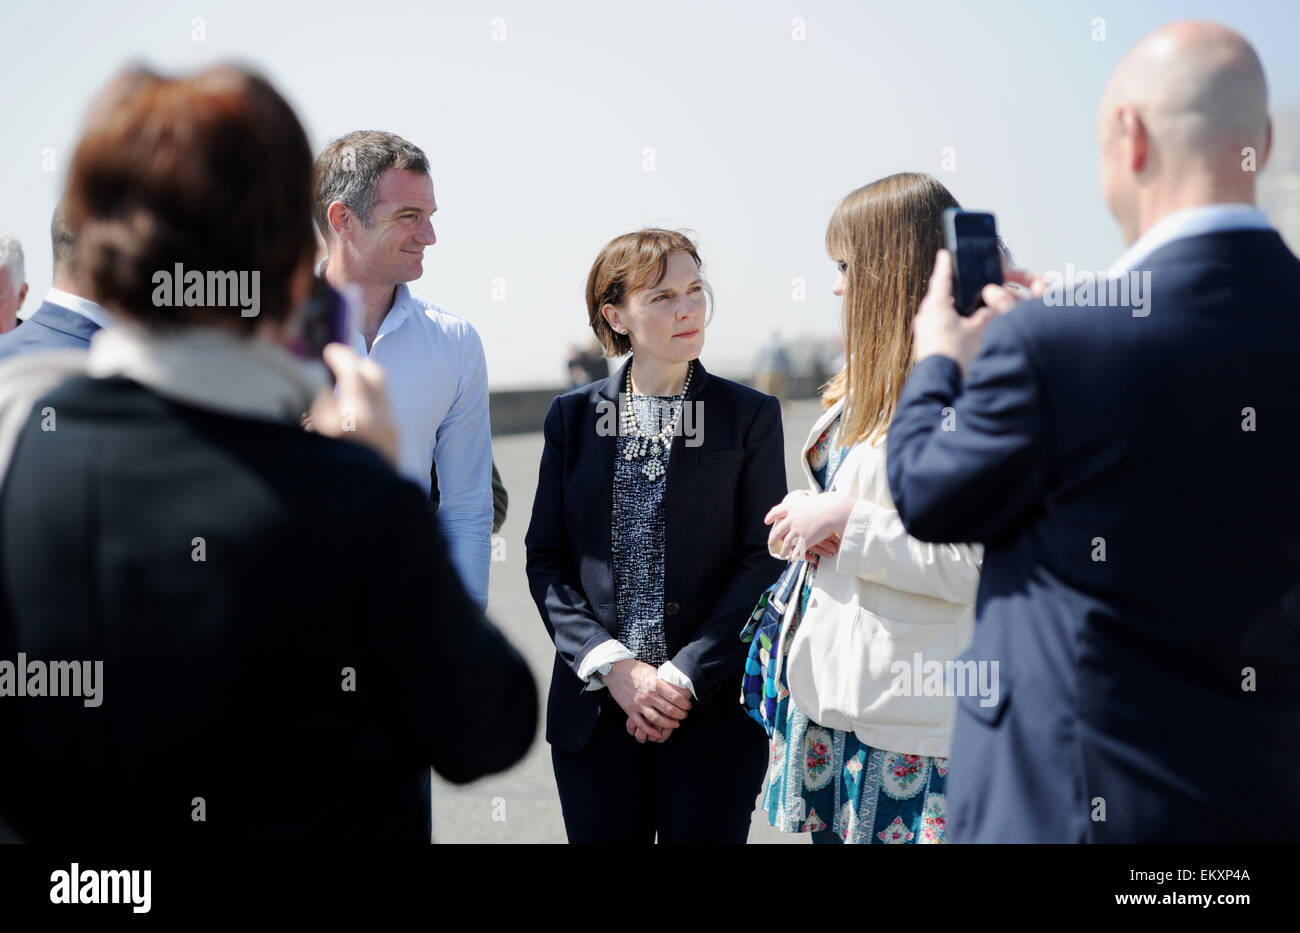 Hove Brighton Regno Unito 14 aprile 2015 - Justine Miliband la moglie del leader laburista Ed Miliband riunione del partito laburista attivisti sul lungomare Hove compresi potenziali candidati parlamentari per Hove Peter Kyle Foto Stock